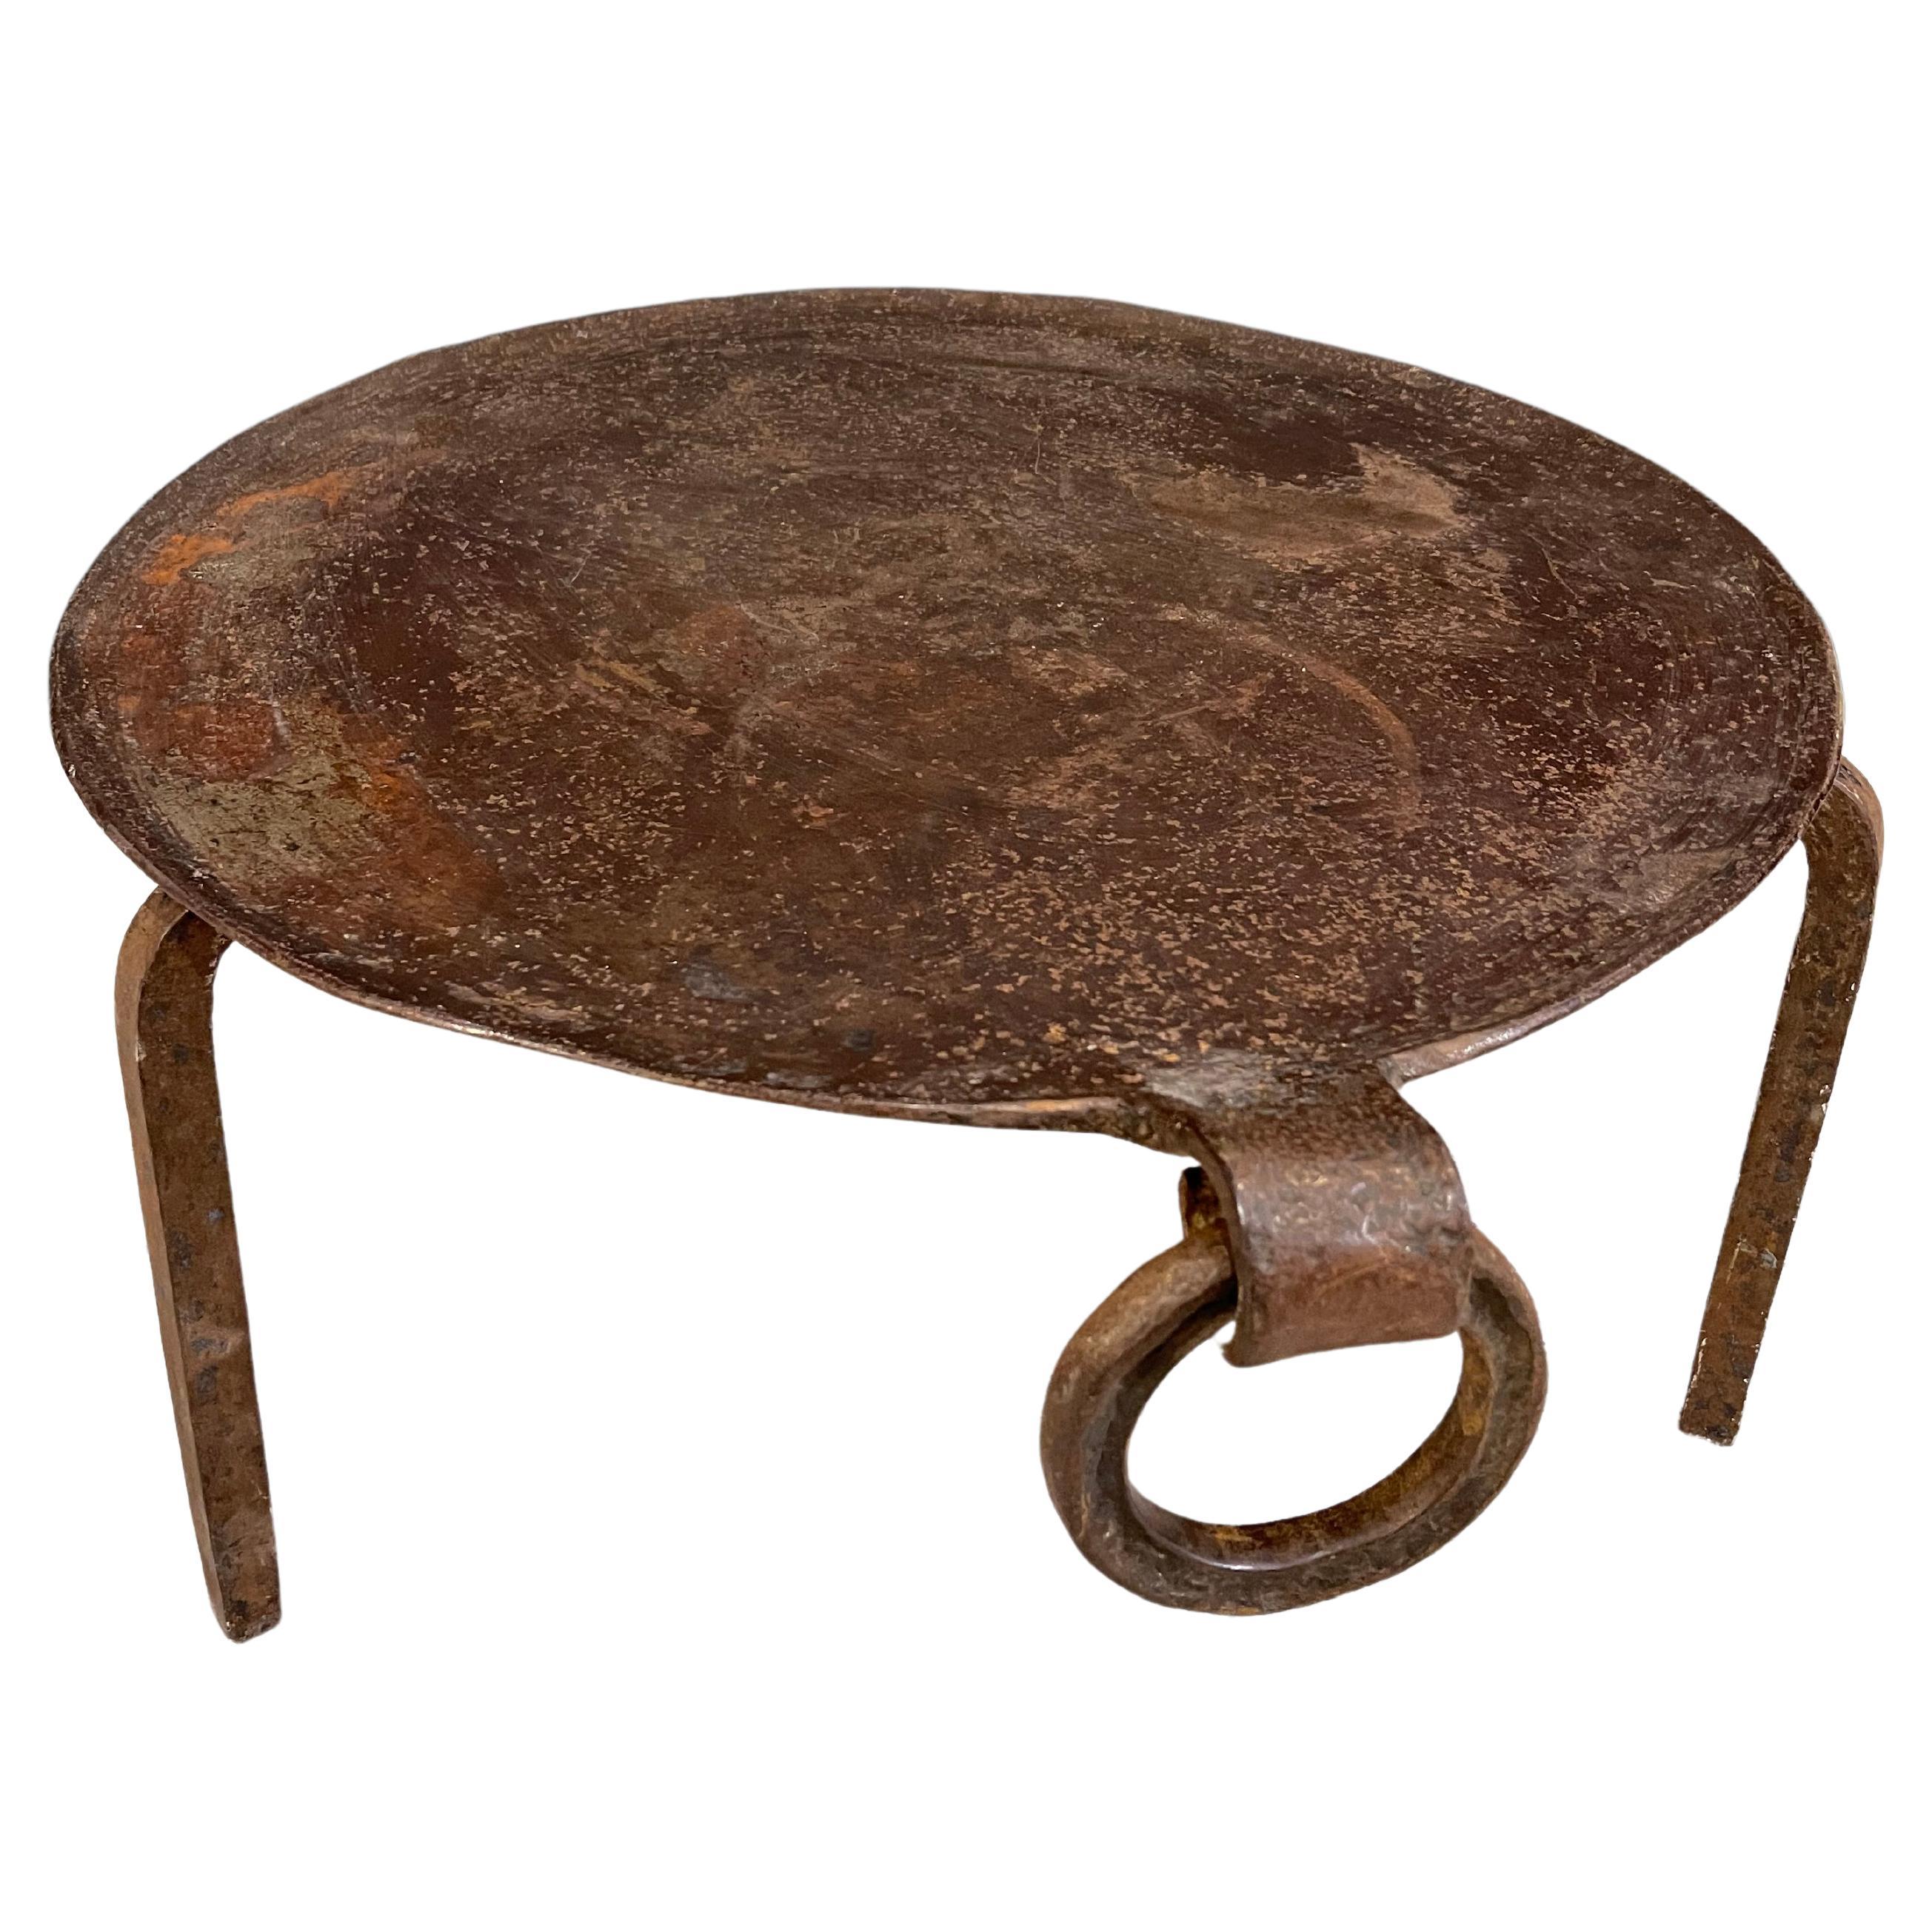 Eisentisch bestehend aus einer kreisförmigen Eisenplatte mit nach innen gebogenem Rand und einem Ring, der diesem Tisch seinen ganzen Stil verleiht. Das Tablett steht auf einem eisernen Stativfuß.